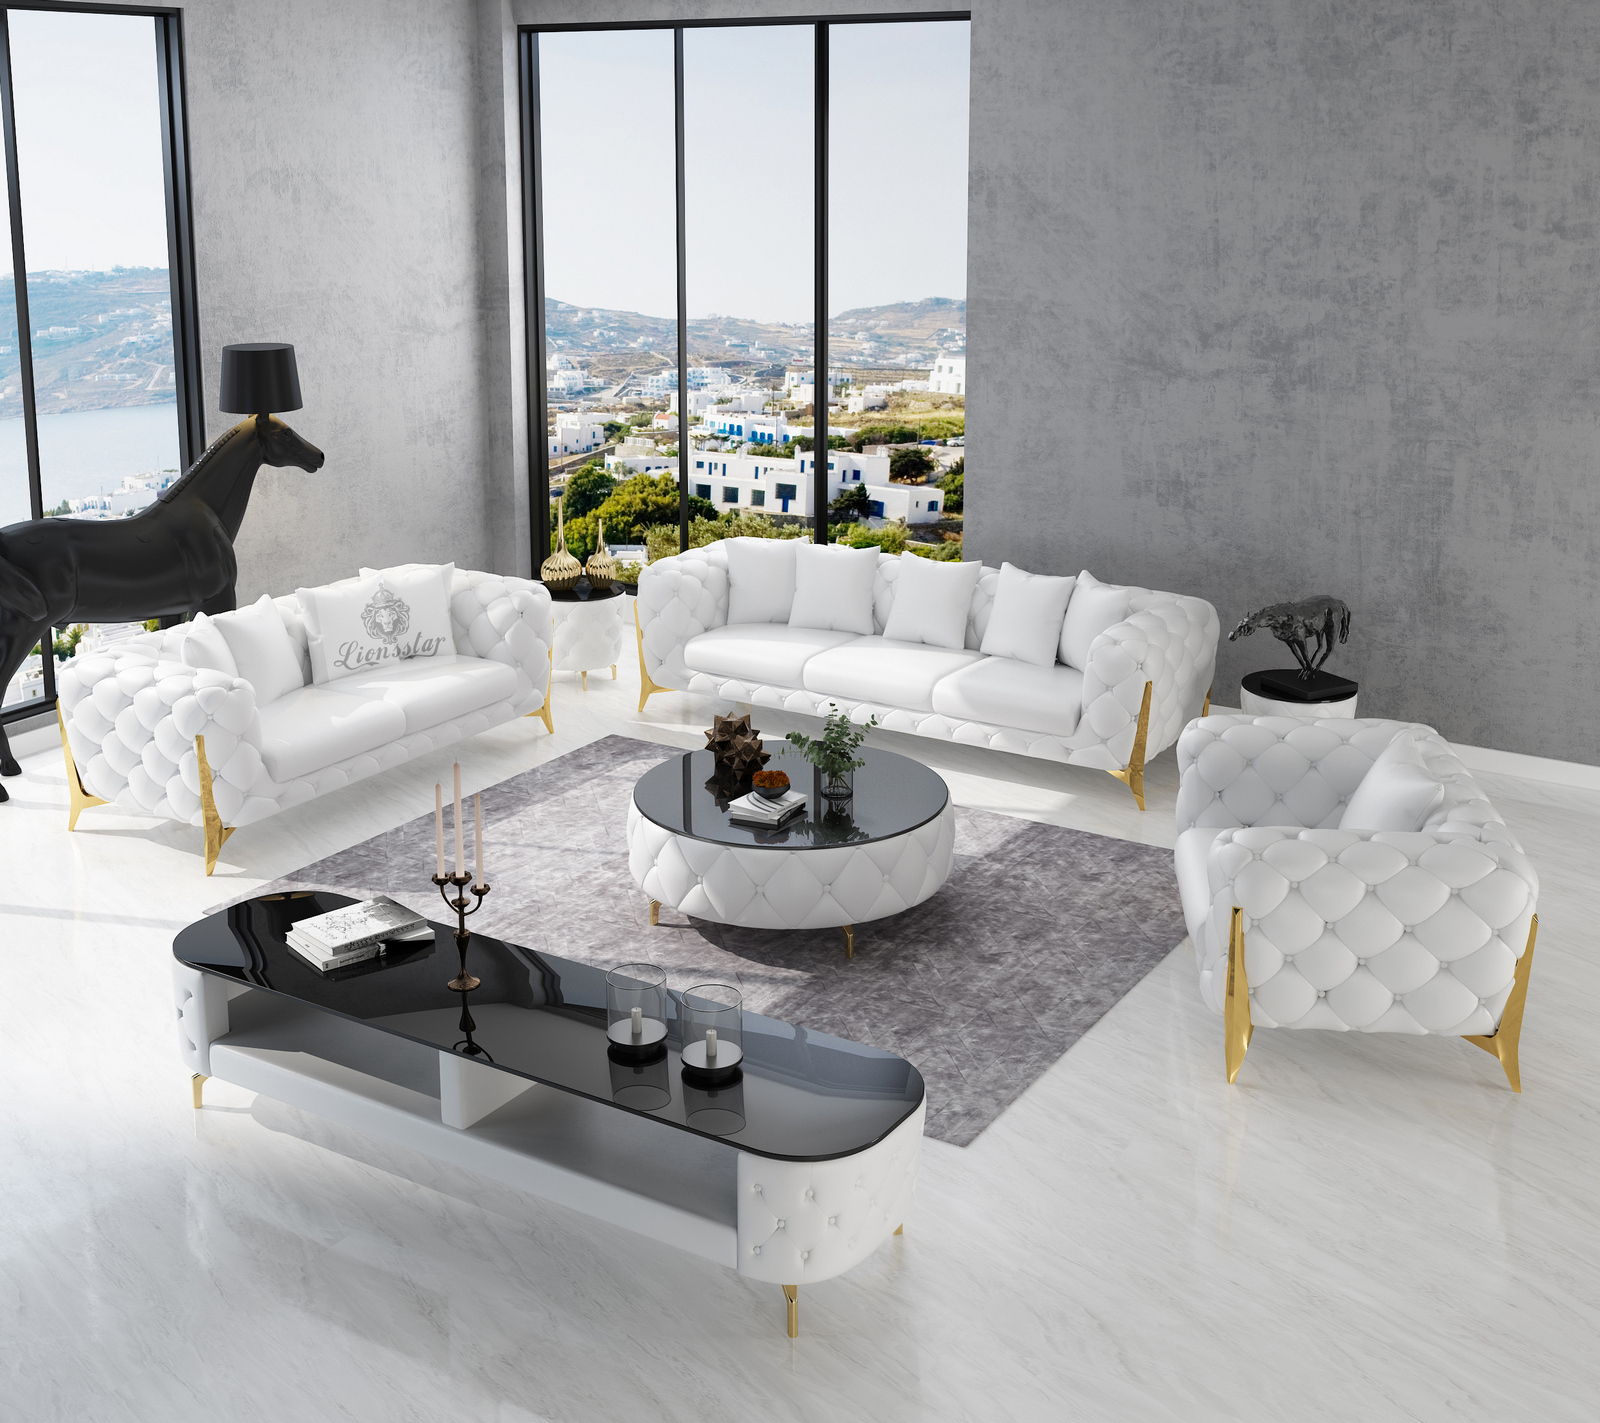 Luxus sofa - Die ausgezeichnetesten Luxus sofa ausführlich analysiert!